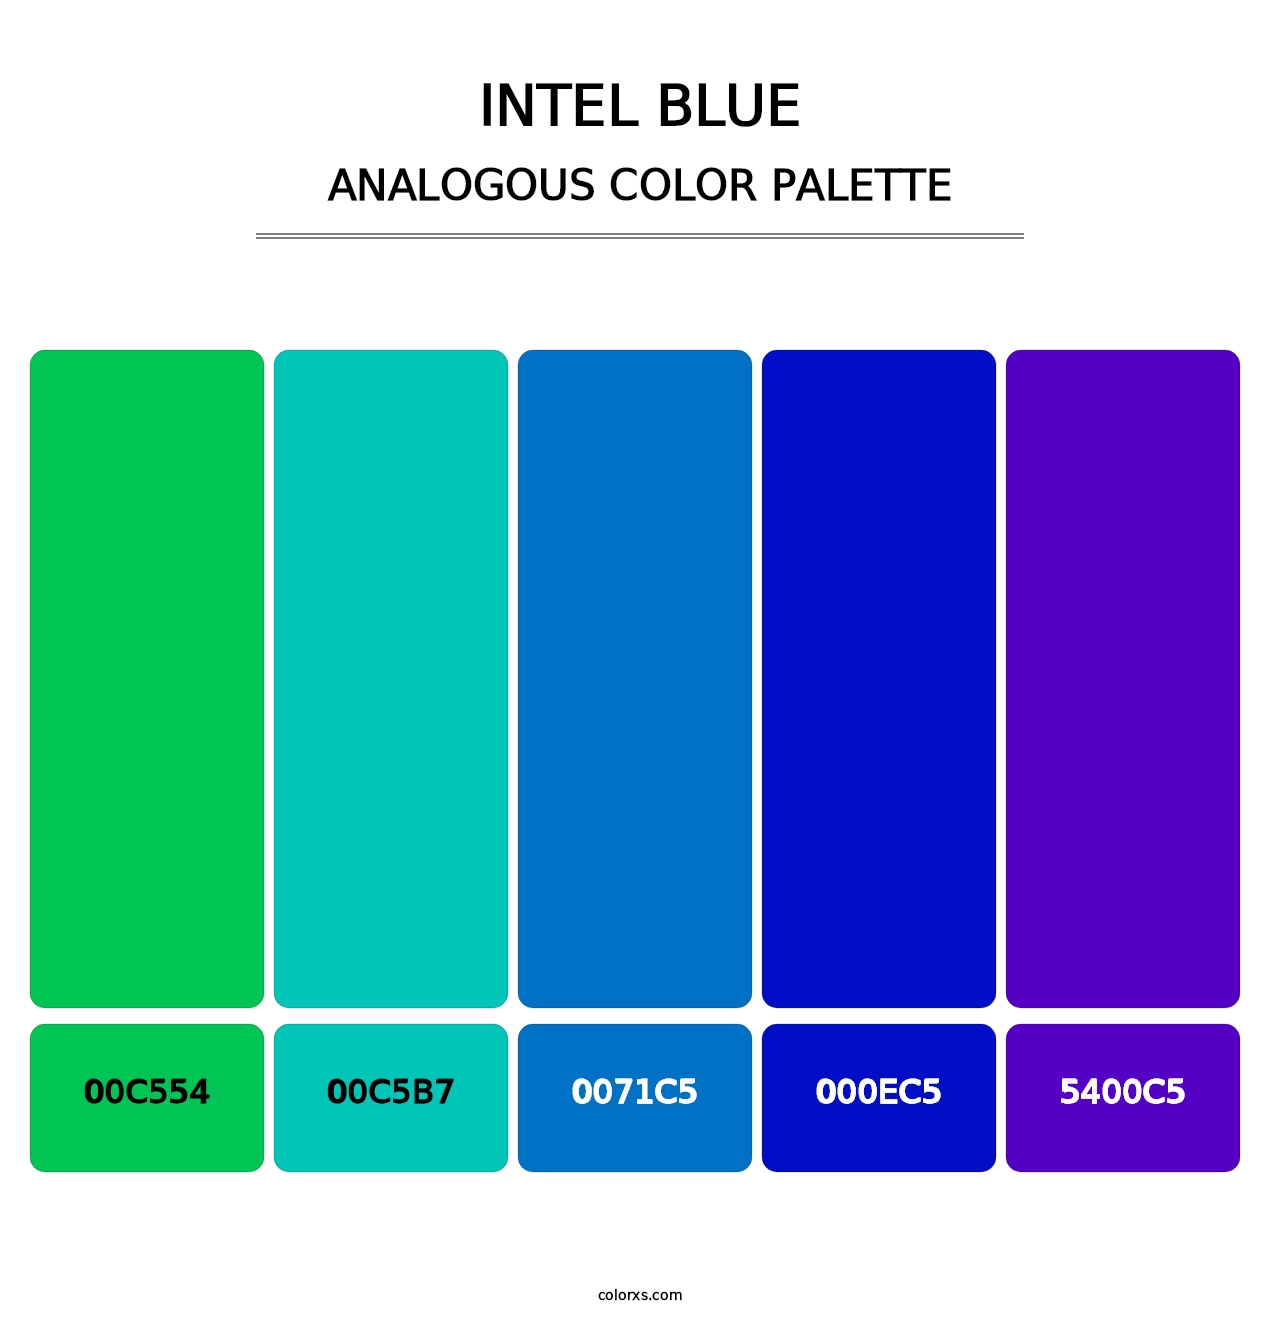 Intel Blue - Analogous Color Palette